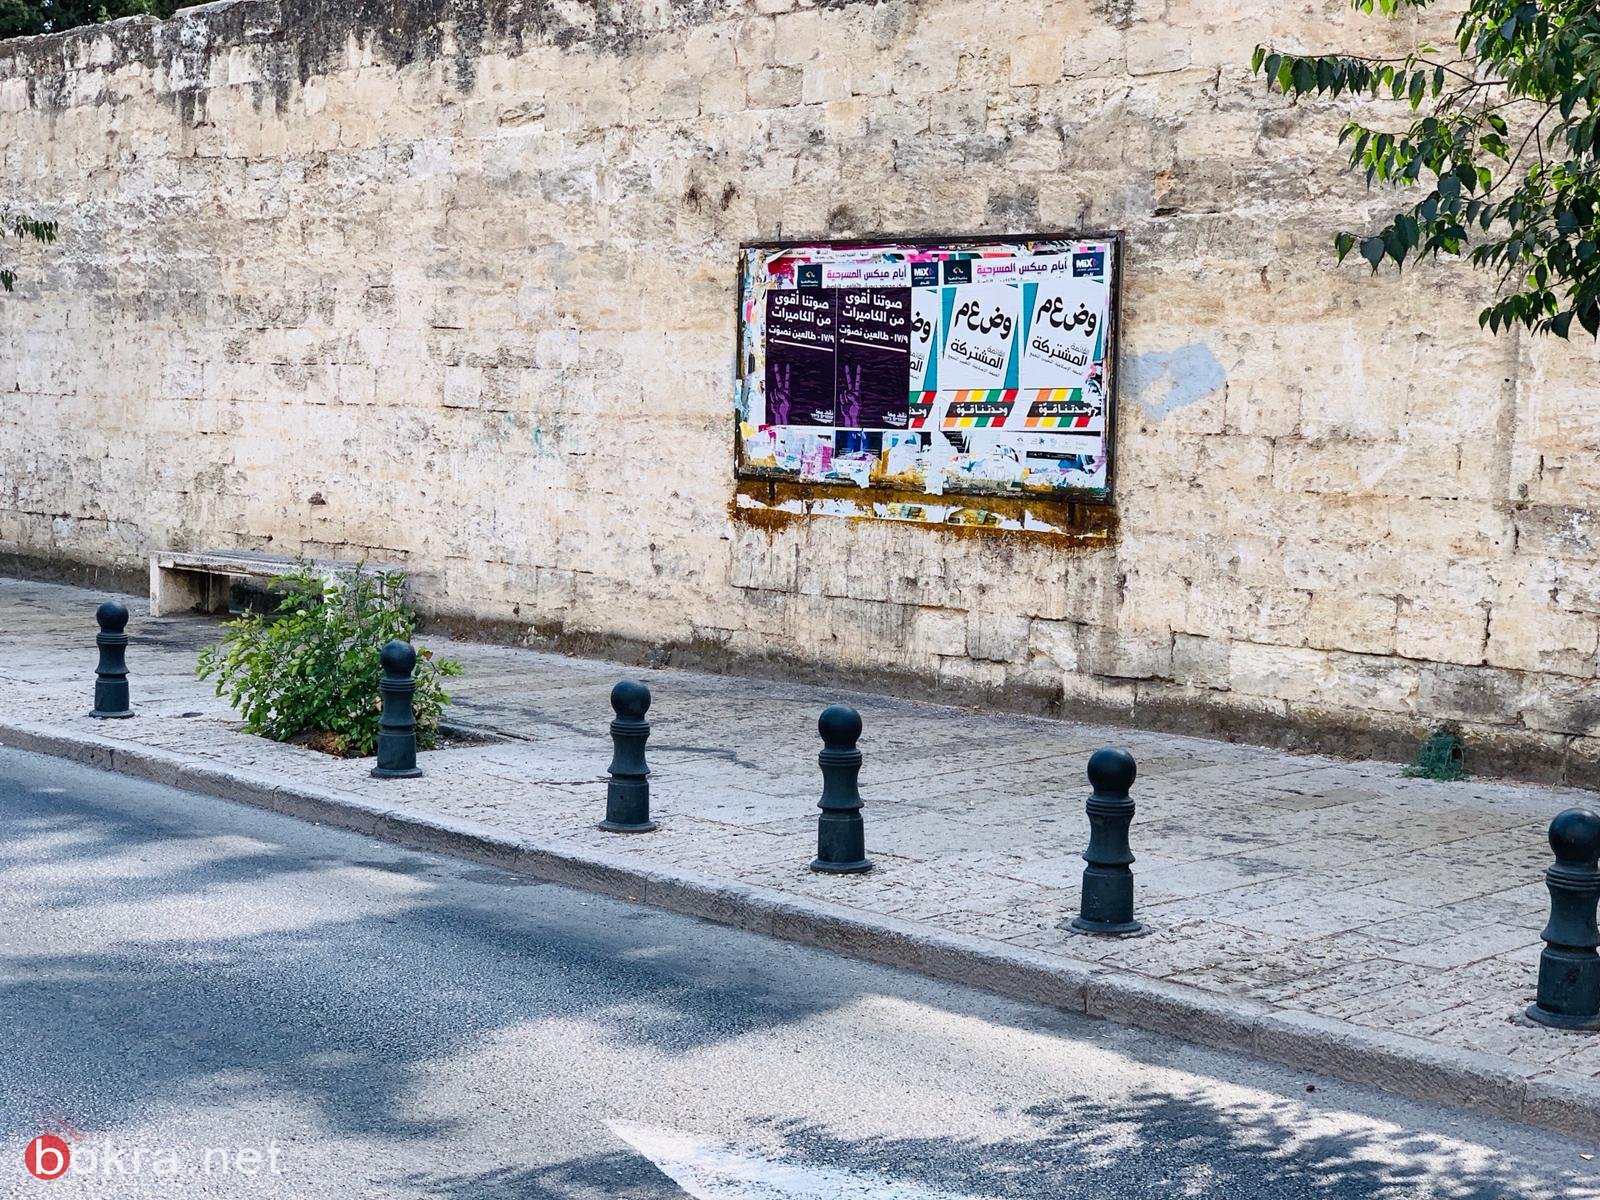 "صوتنا أقوى من الكاميرات: ملصقات لحراك "نقف معًا" تملأ شوارع البلدات العربية*-11